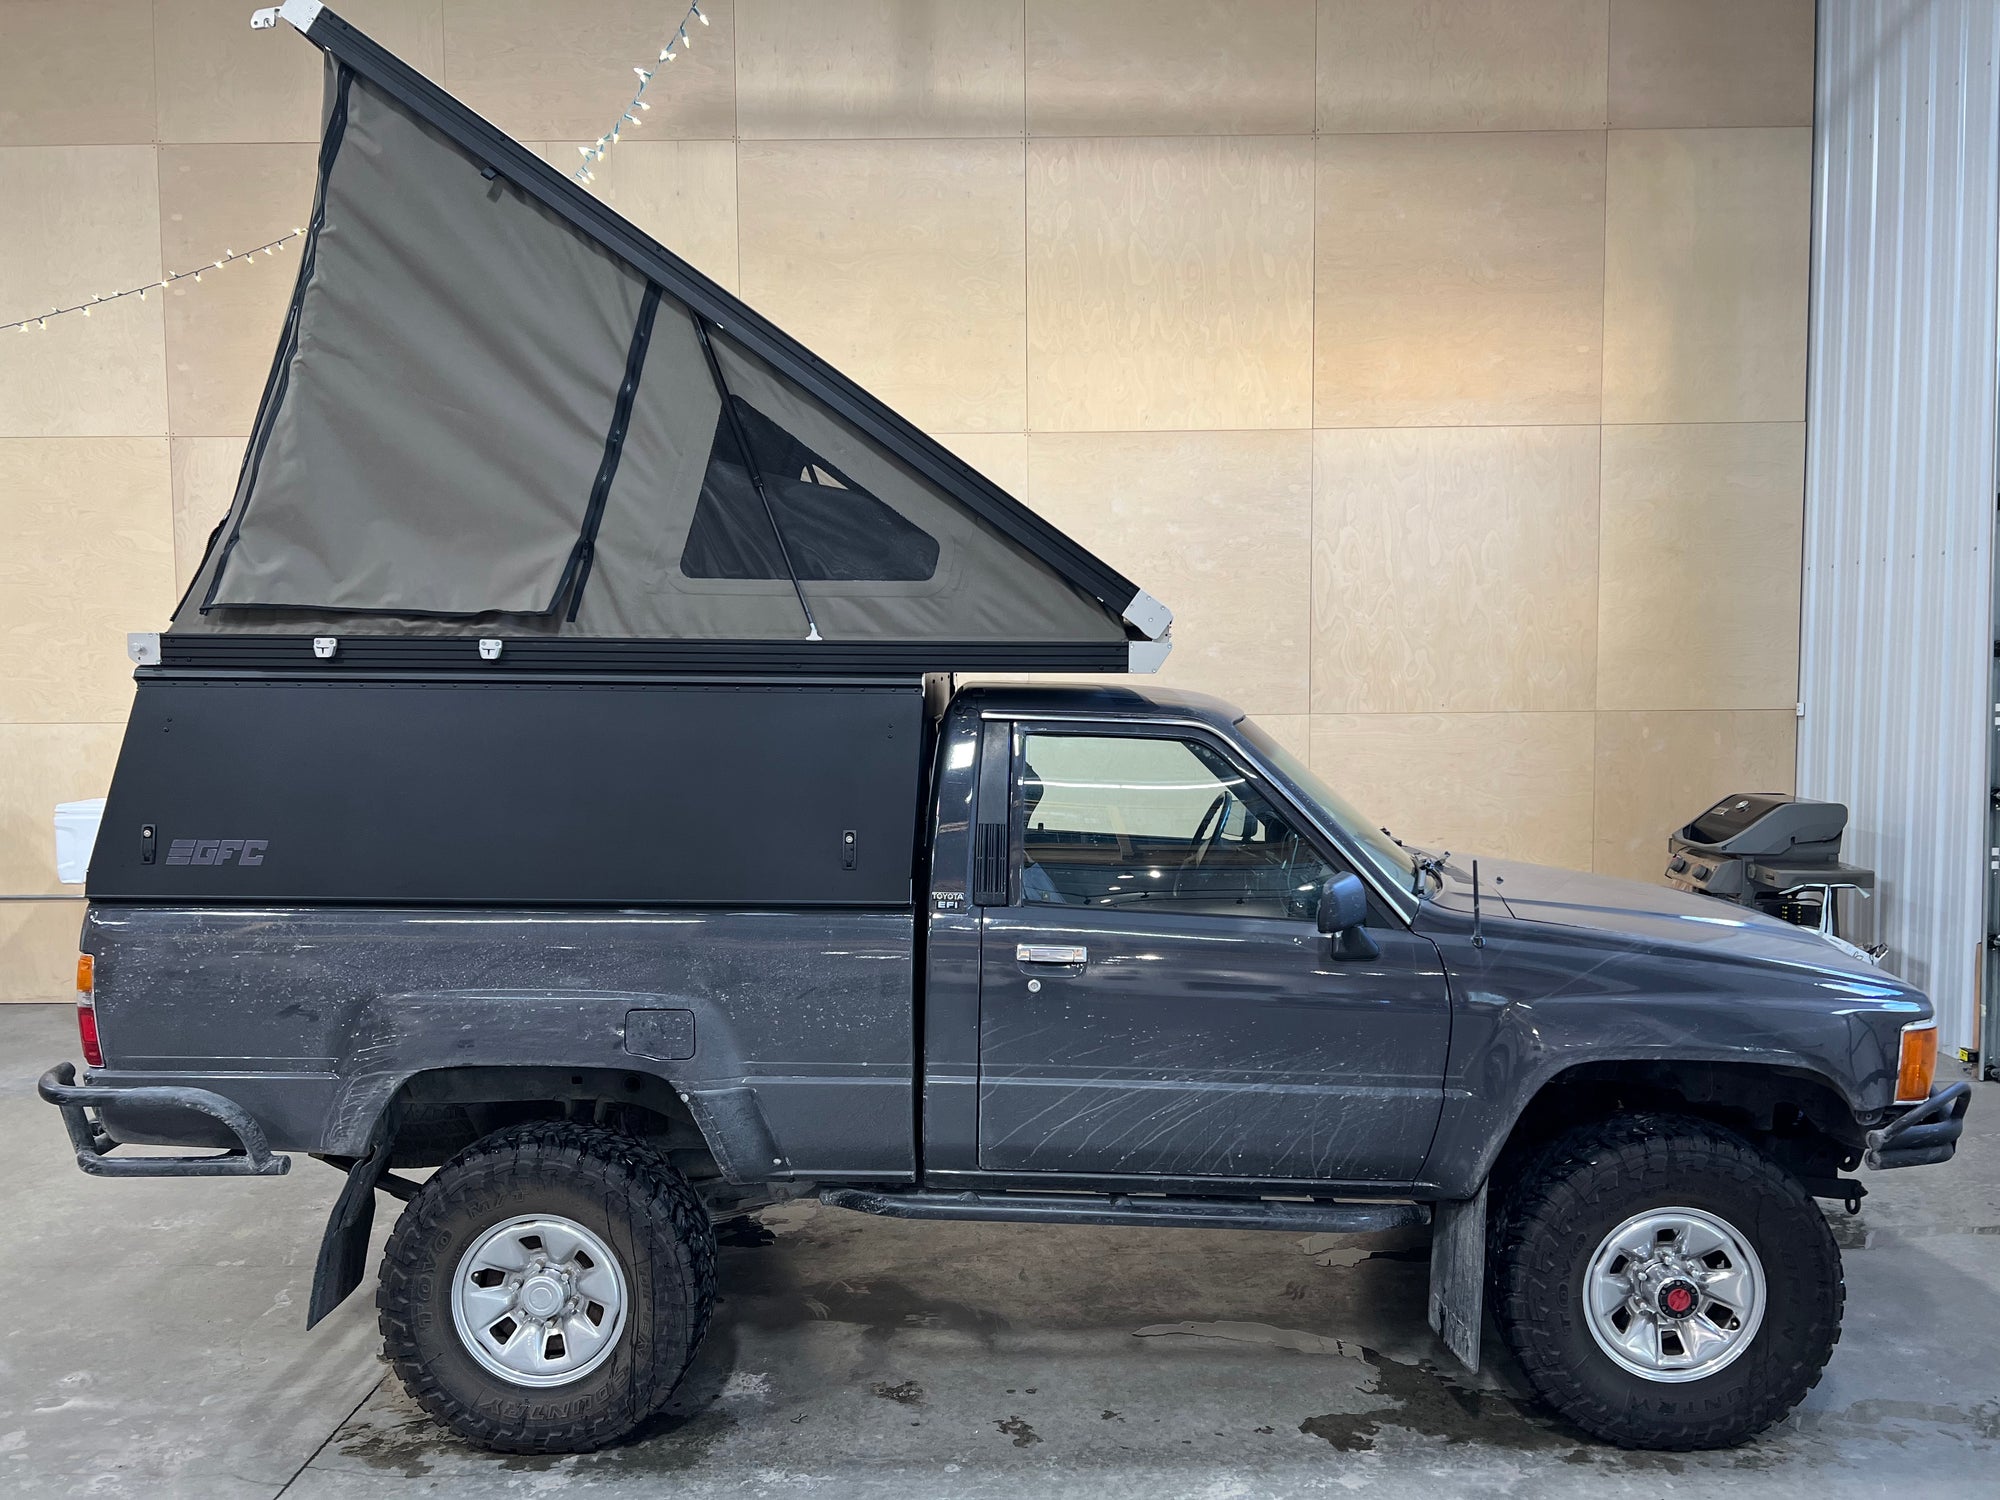 1988 Toyota Pickup Camper - Build #4340